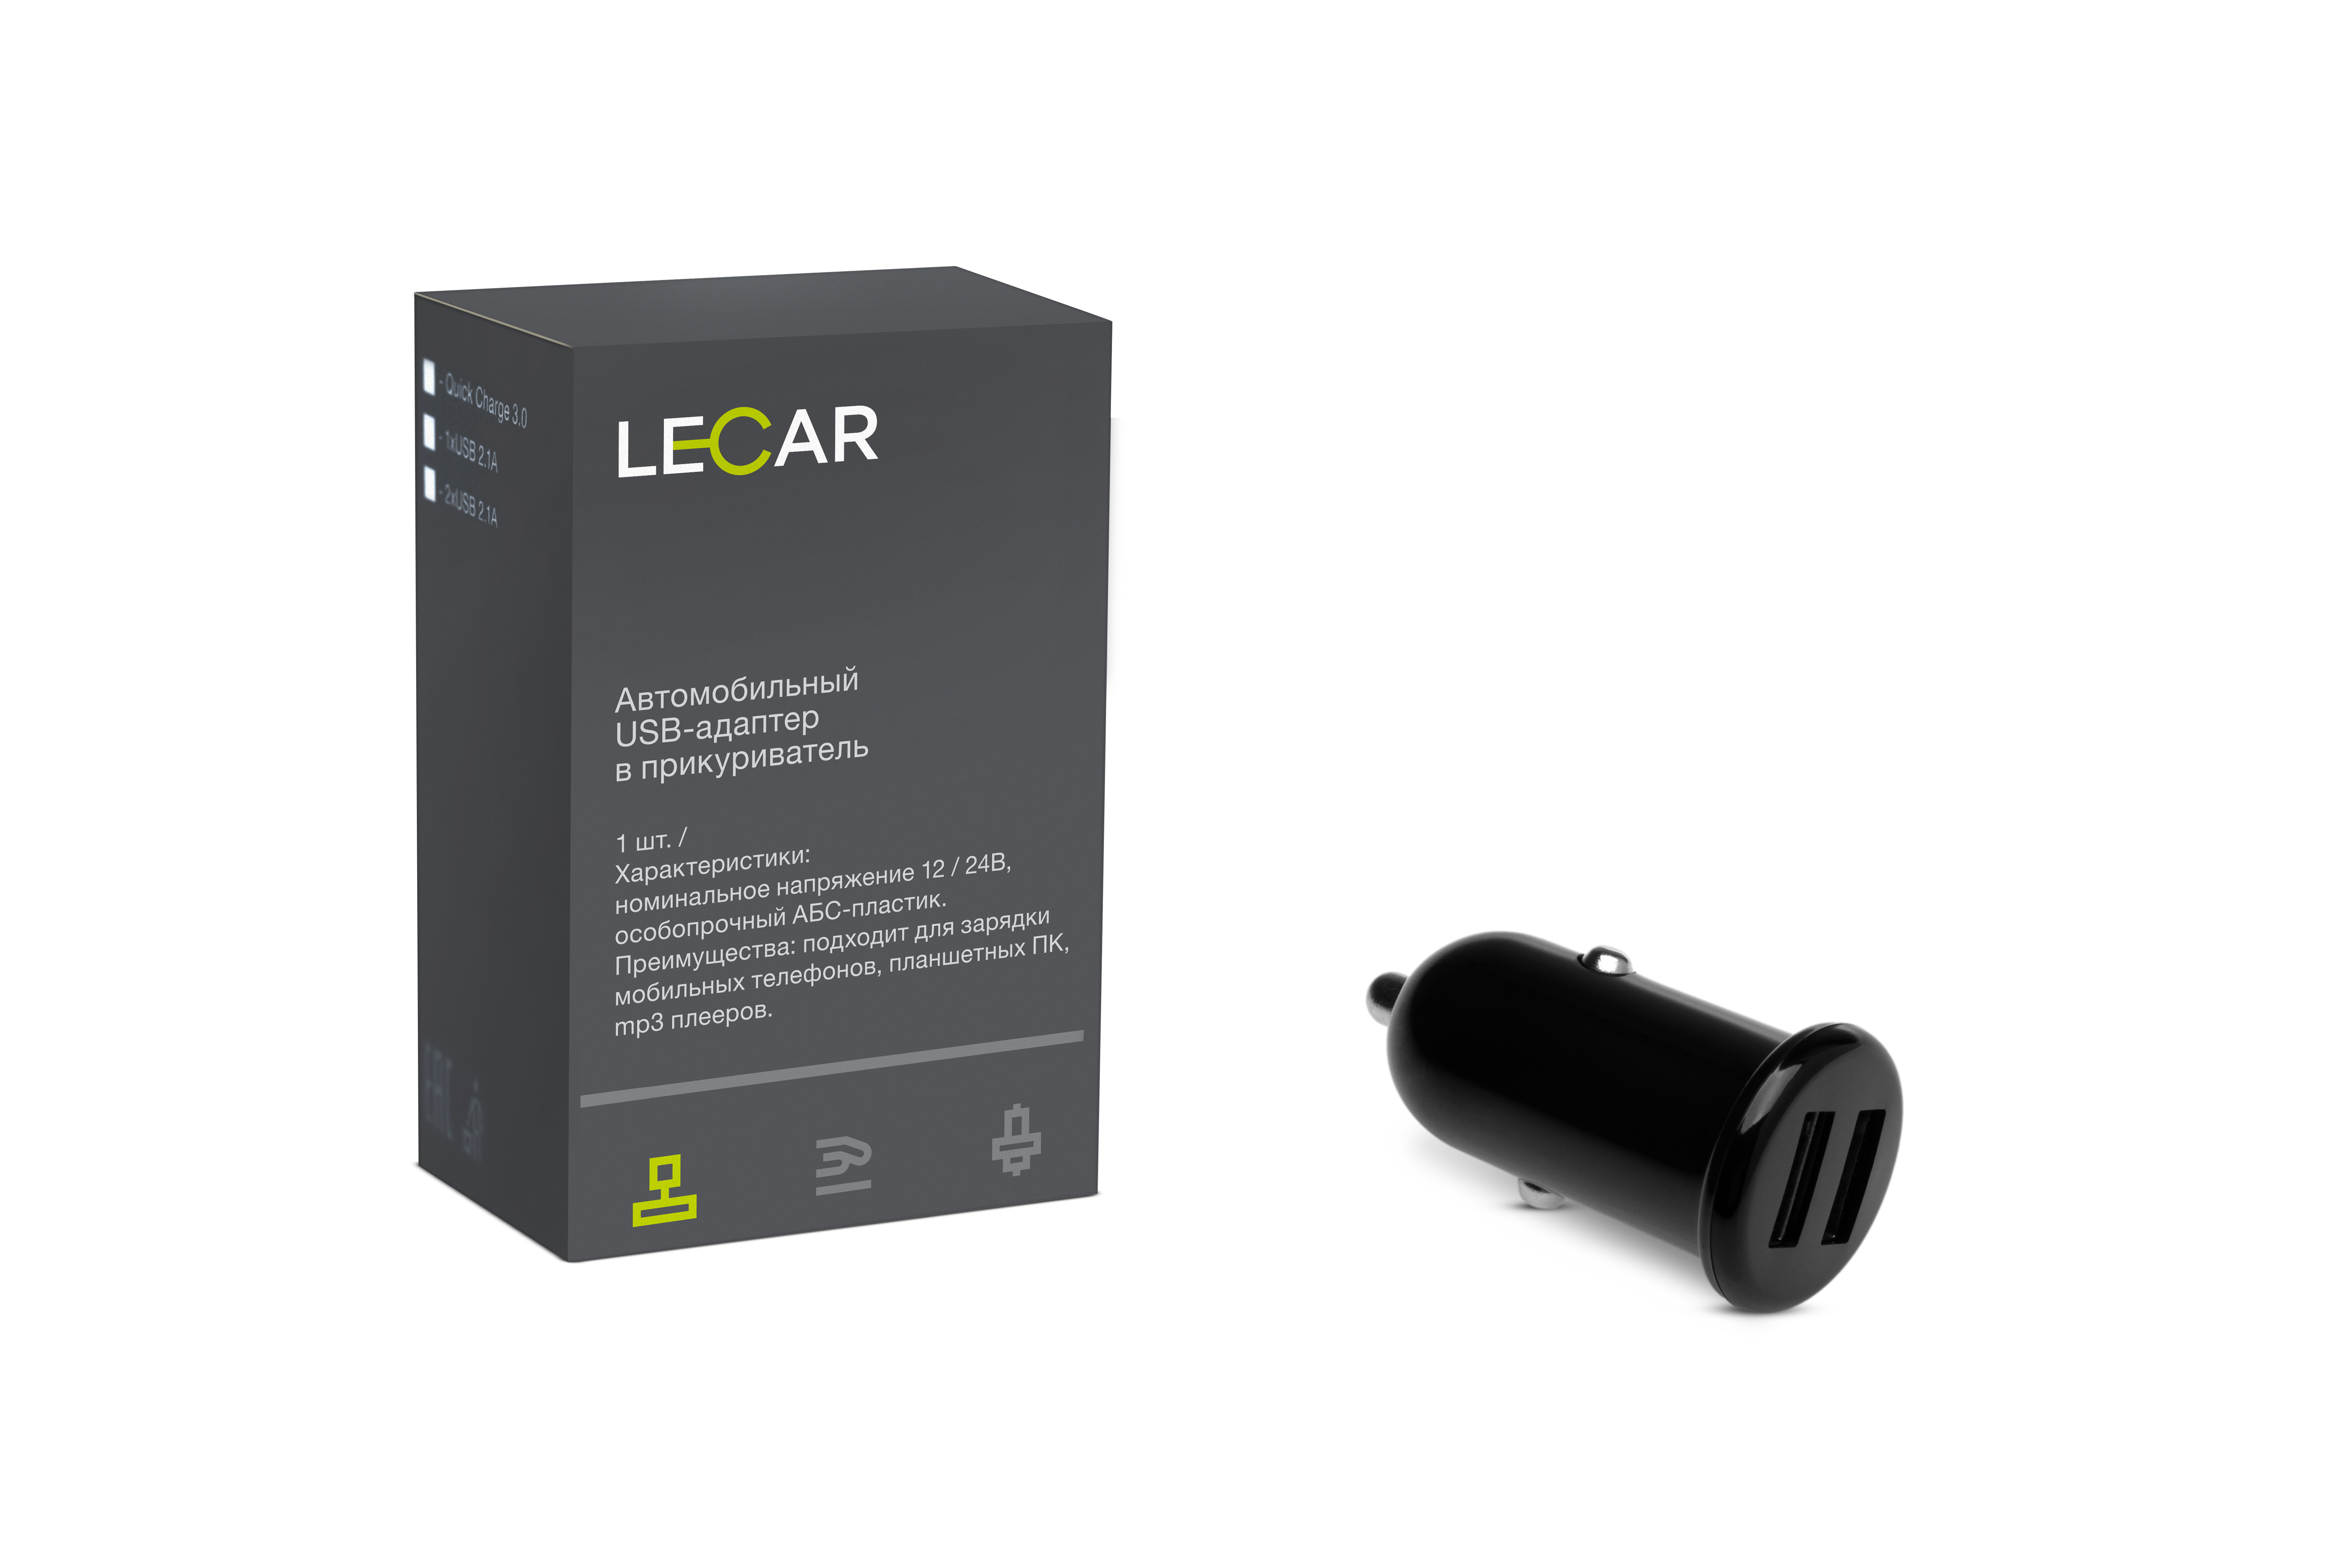 Зарядное устройство для мобильных устройств 2хUSB 1а+2.1а lecar в прикуриватель 12/24в - LECAR LECAR000045209